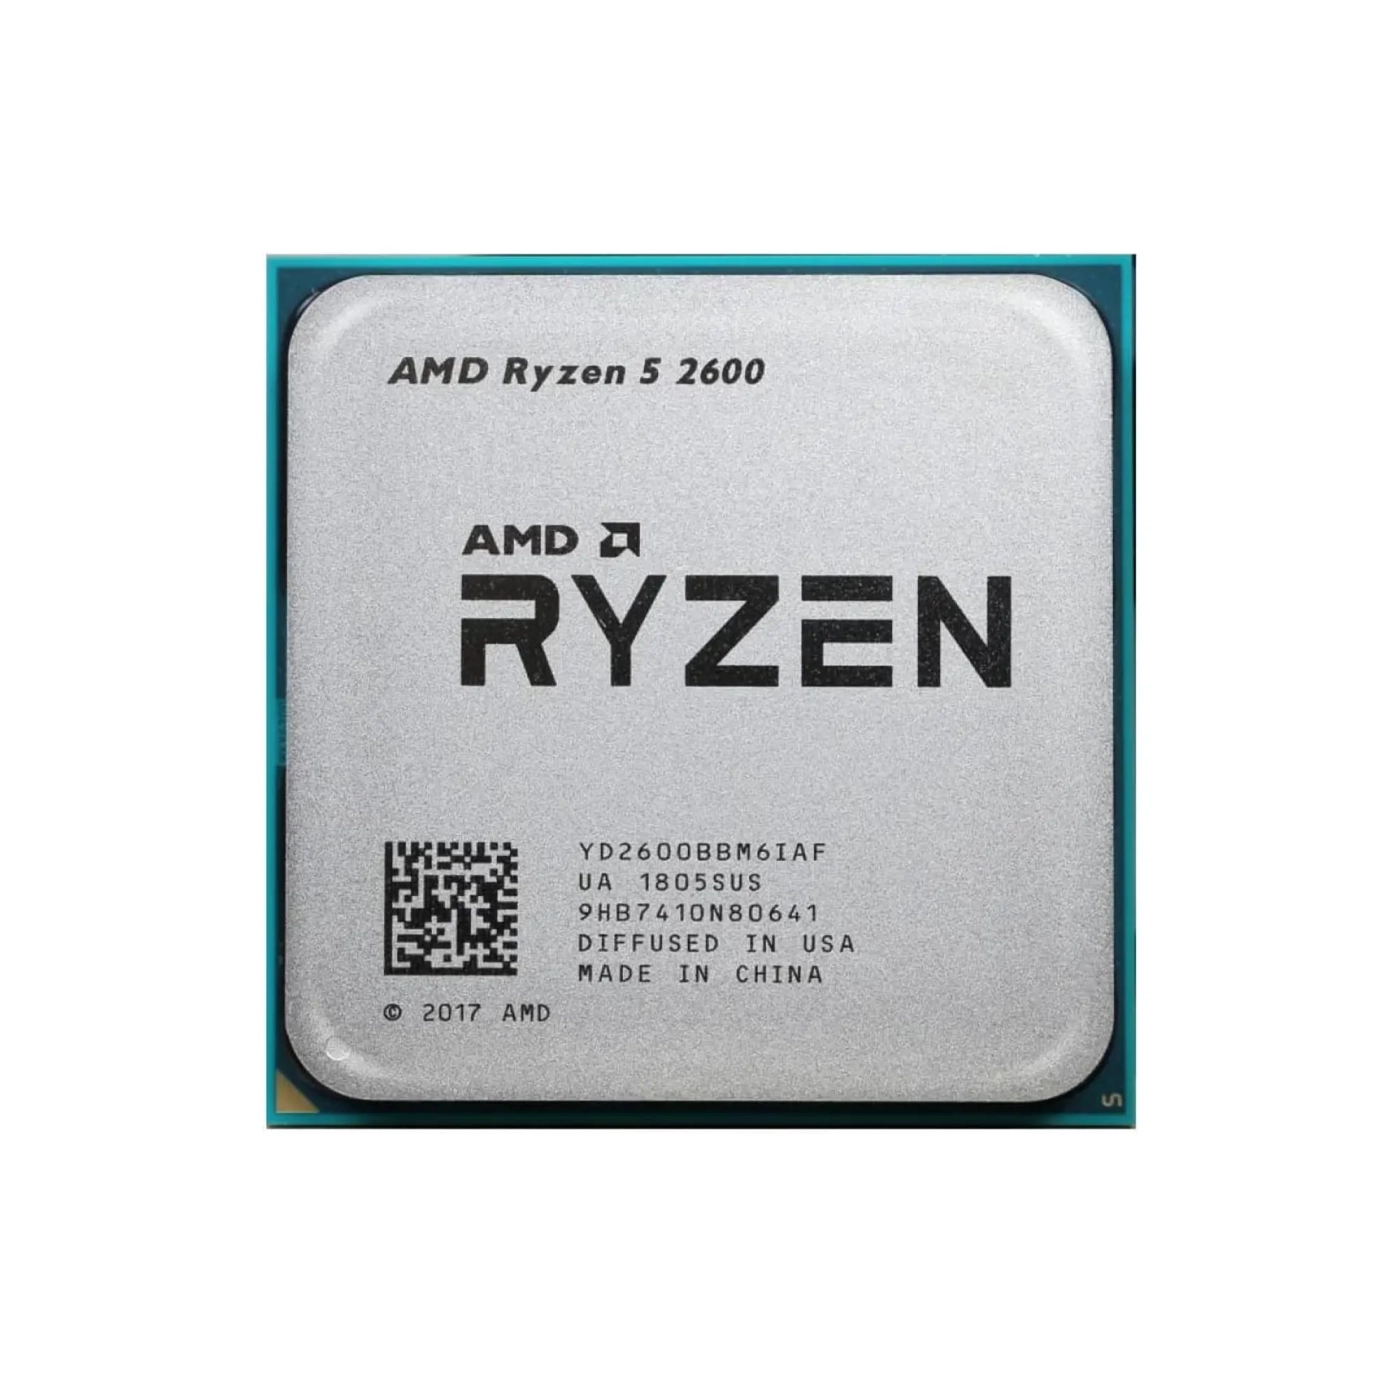 Купити Процесор AMD Ryzen 5 2600 3.9GHz, 6C/12T, 19MB,65W,AM4 Tray (YD2600BBM6IAF) - фото 1